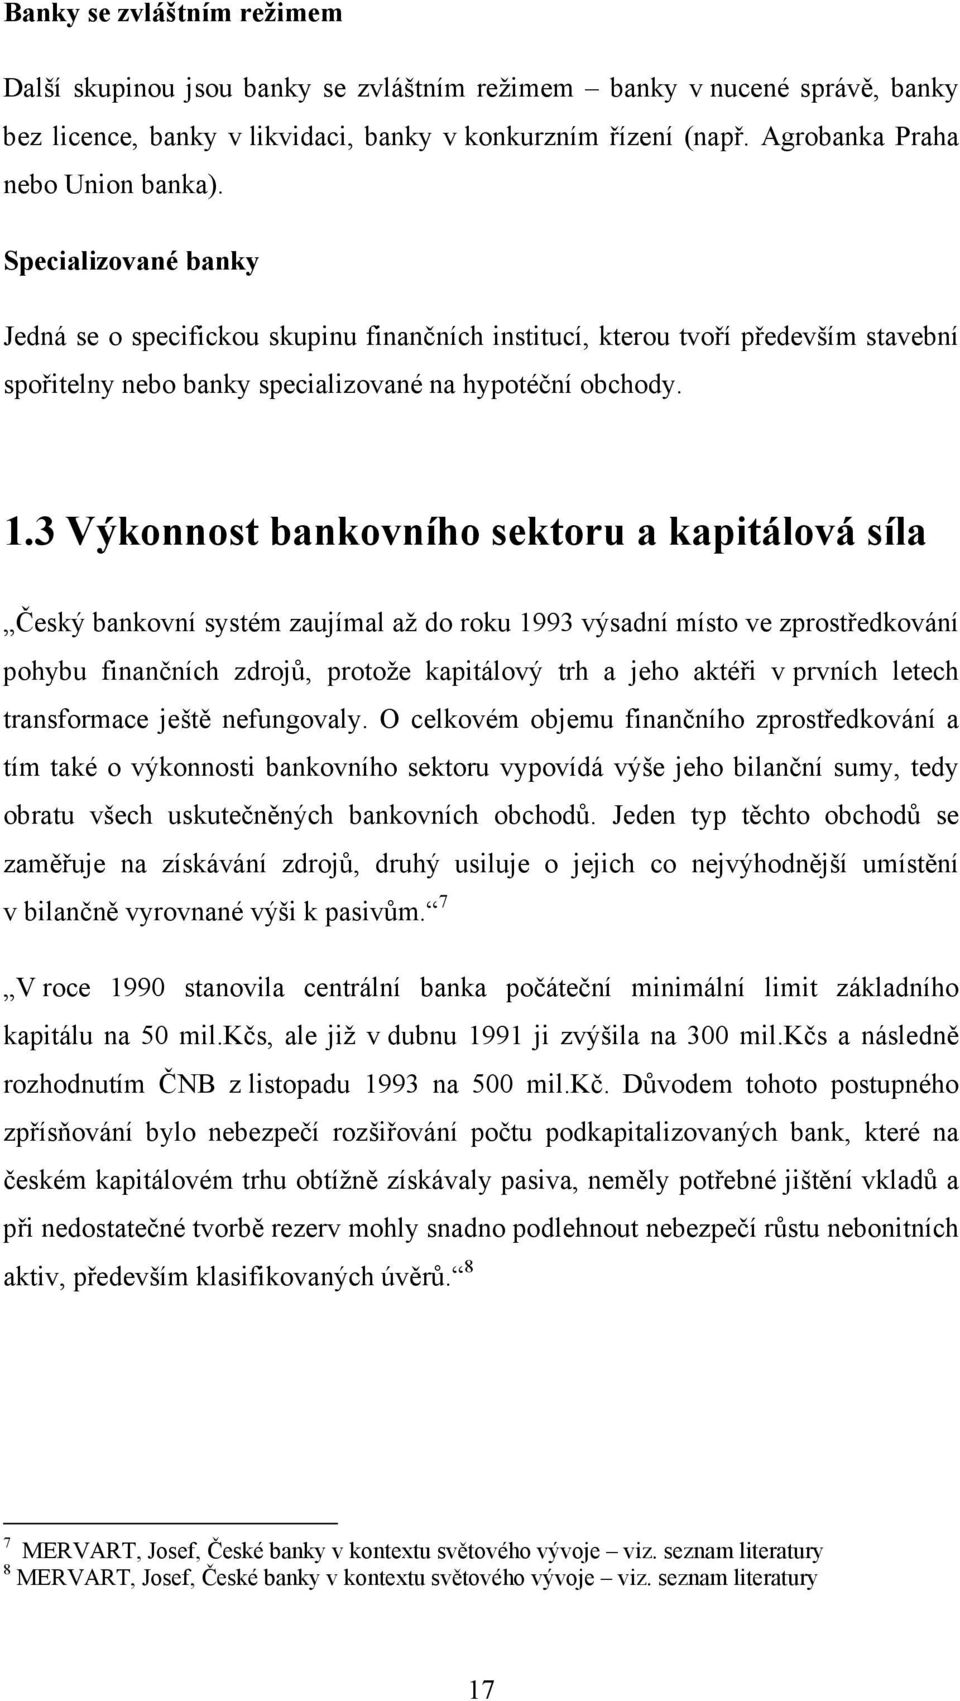 1.3 Výkonnost bankovního sektoru a kapitálová síla Český bankovní systém zaujímal až do roku 1993 výsadní místo ve zprostředkování pohybu finančních zdrojů, protože kapitálový trh a jeho aktéři v